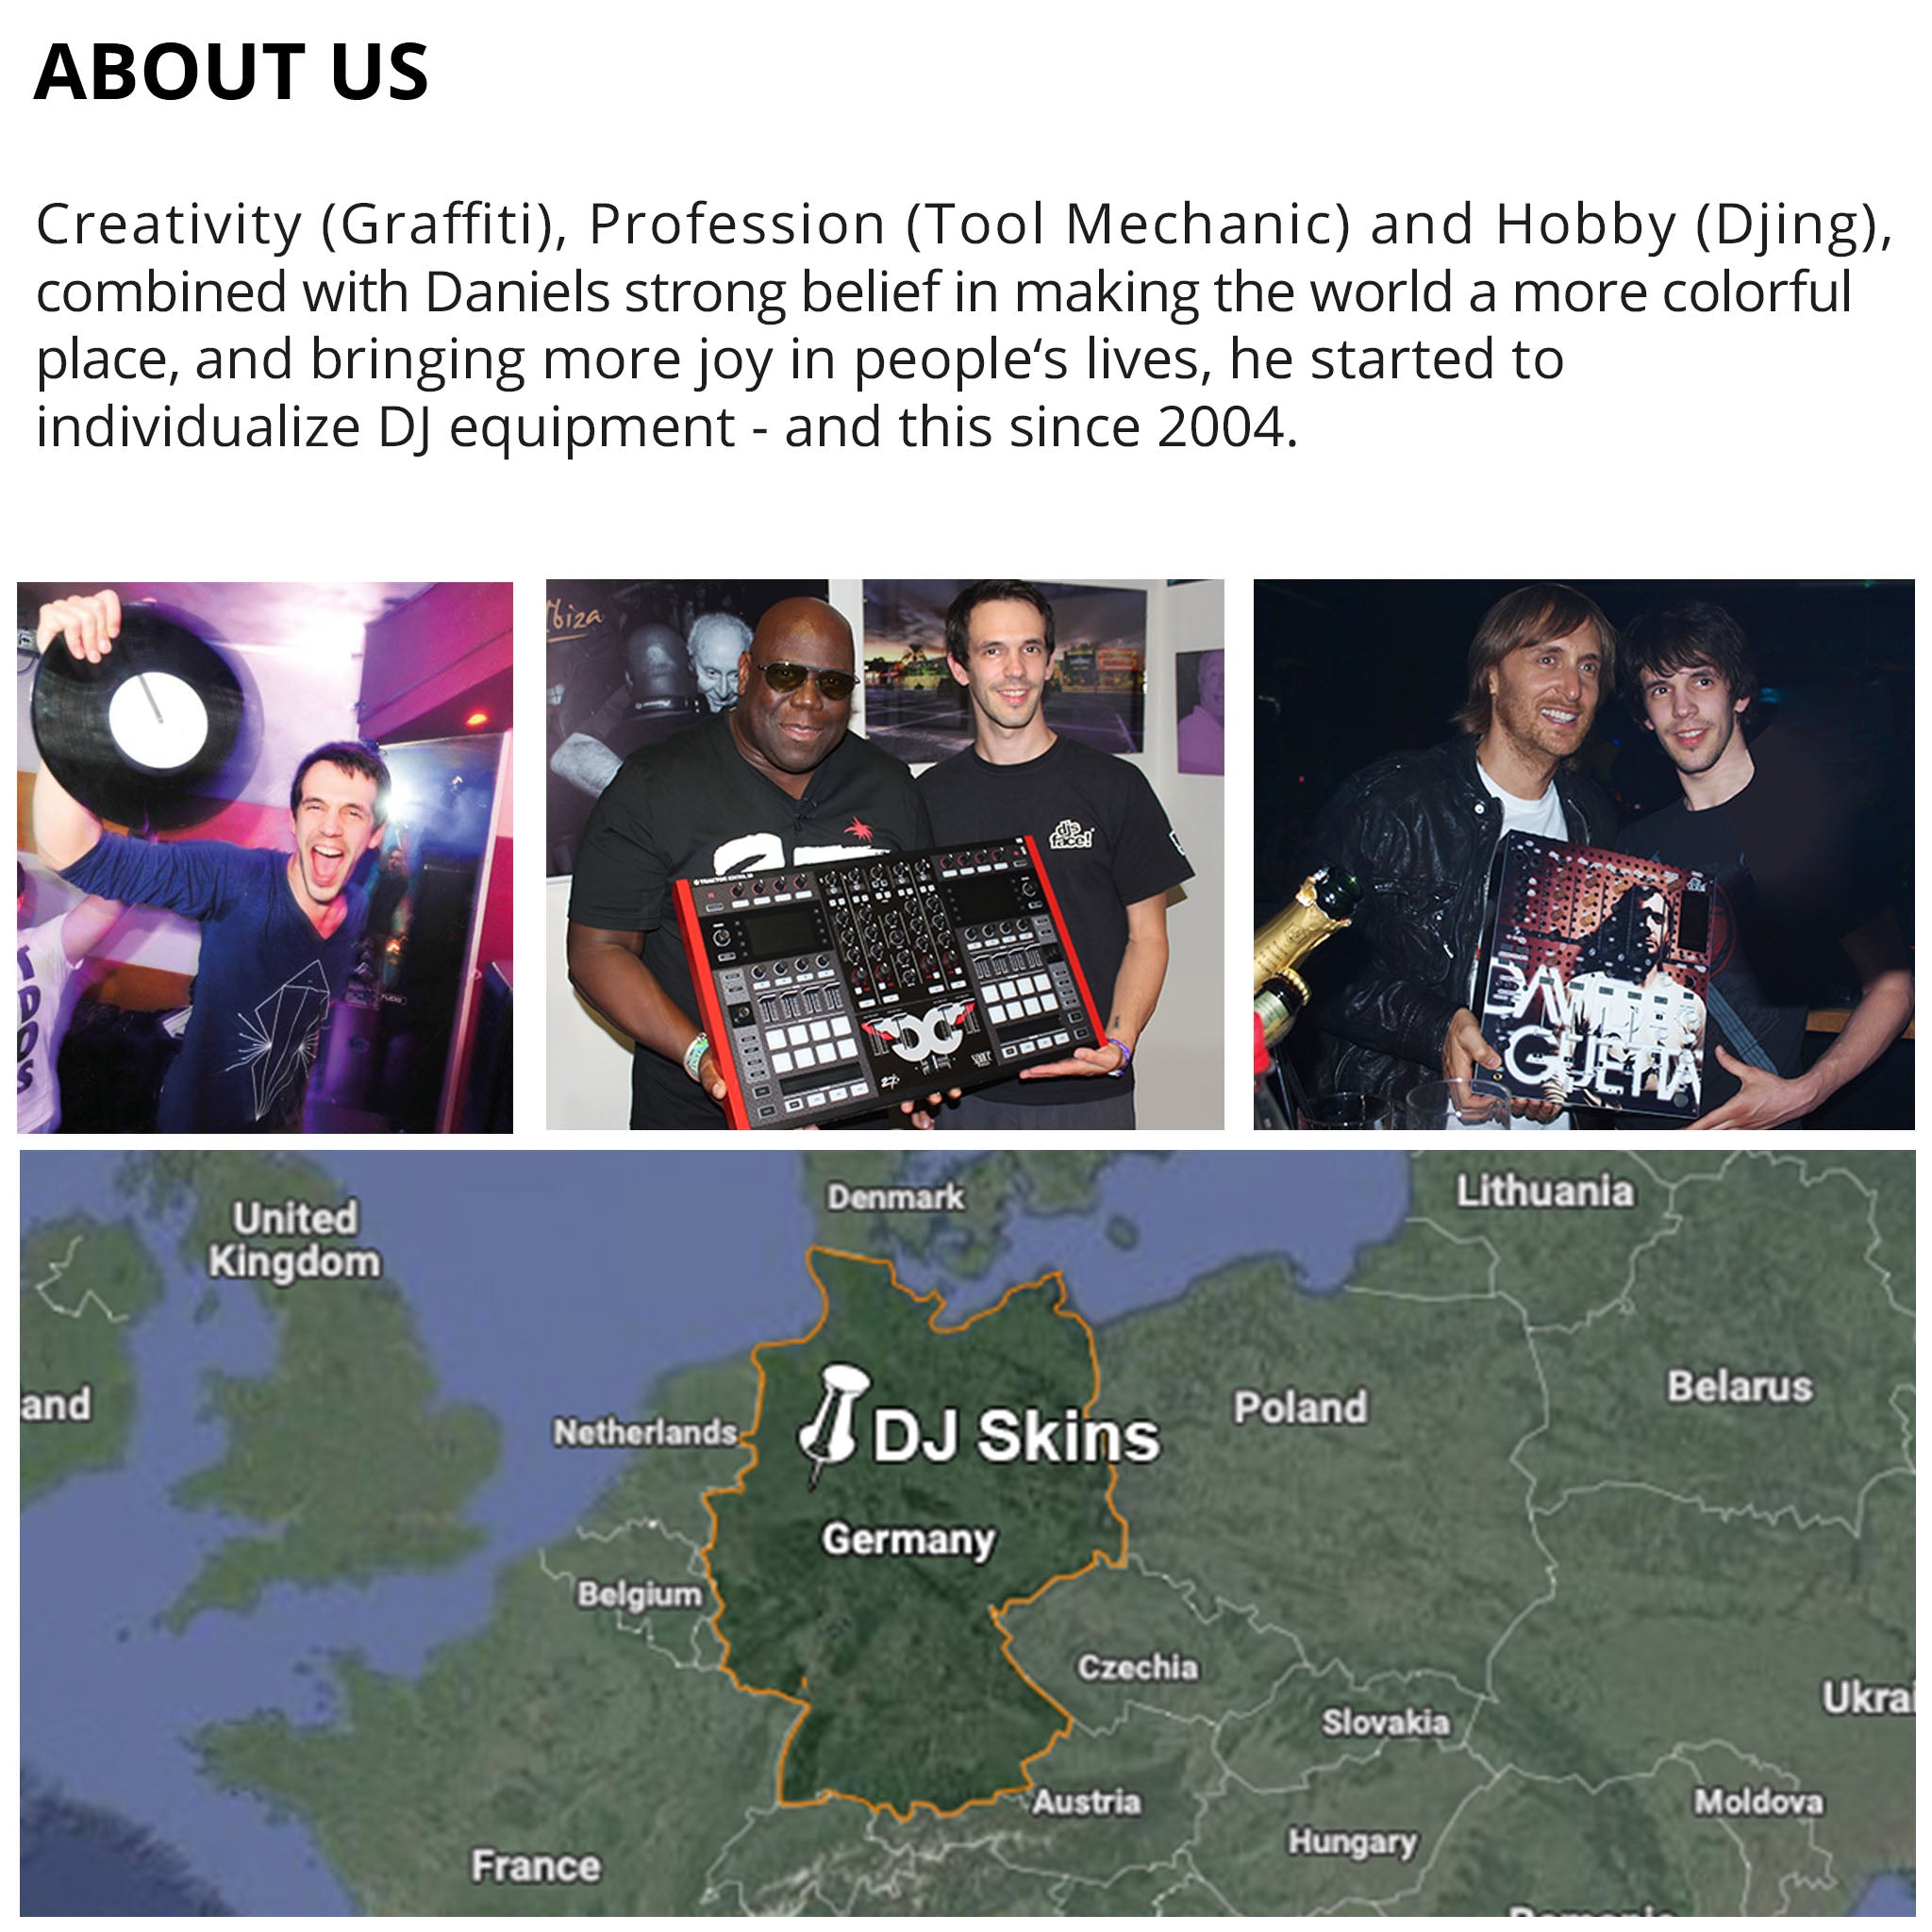 Pioneer DJ DJM 900 NEXUS 2 Skin Brushed Black